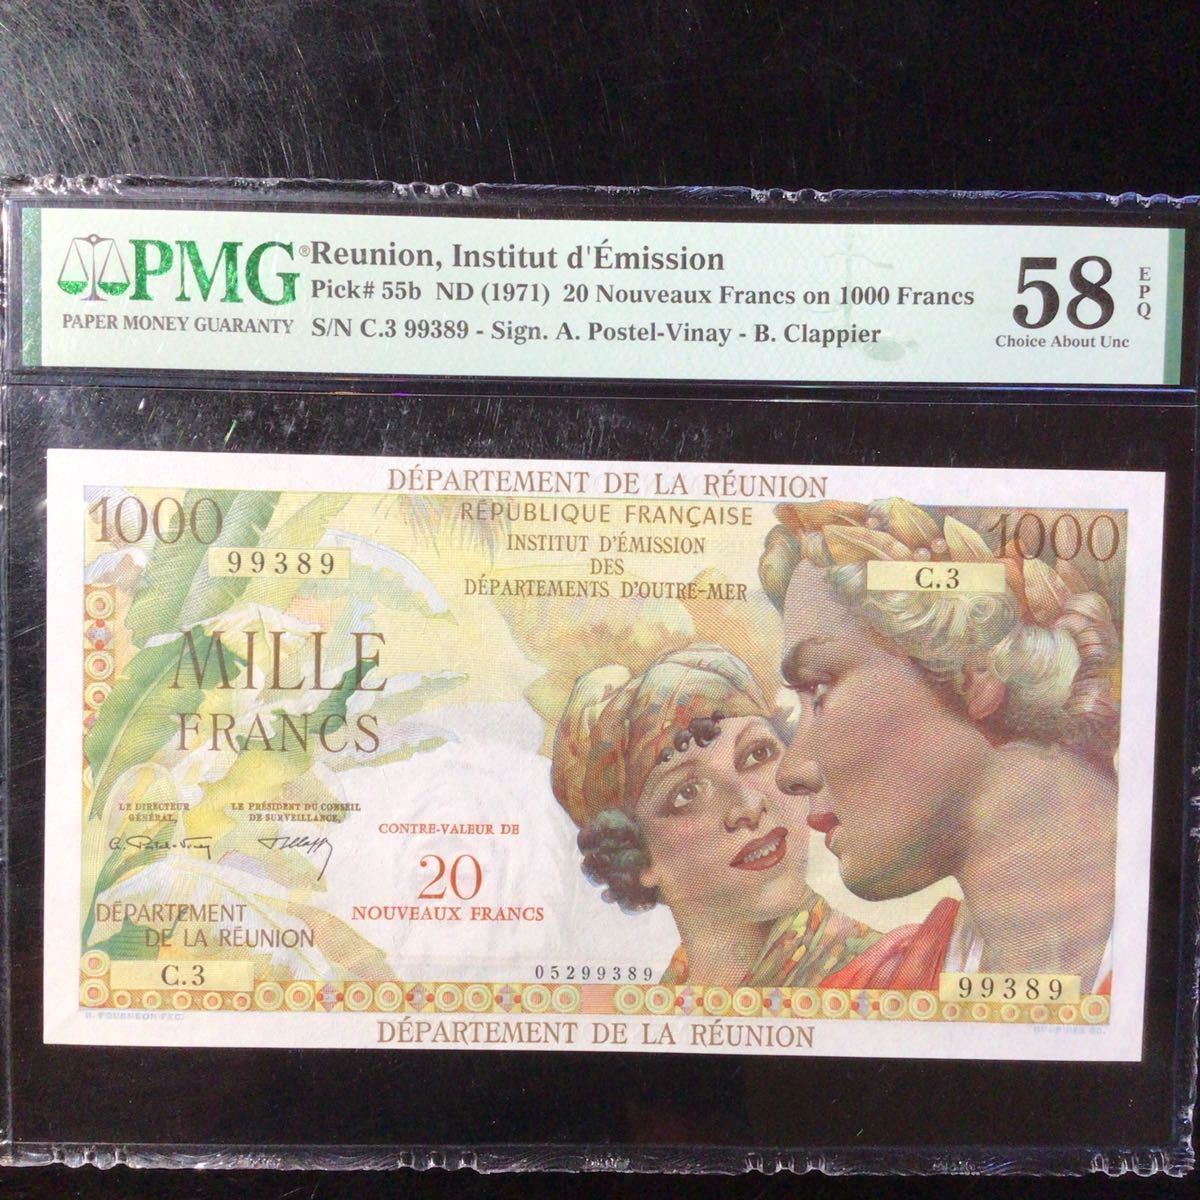 品質満点 Francs【1971】『PMG 1000 Francs Nouveaux d'Emission》20